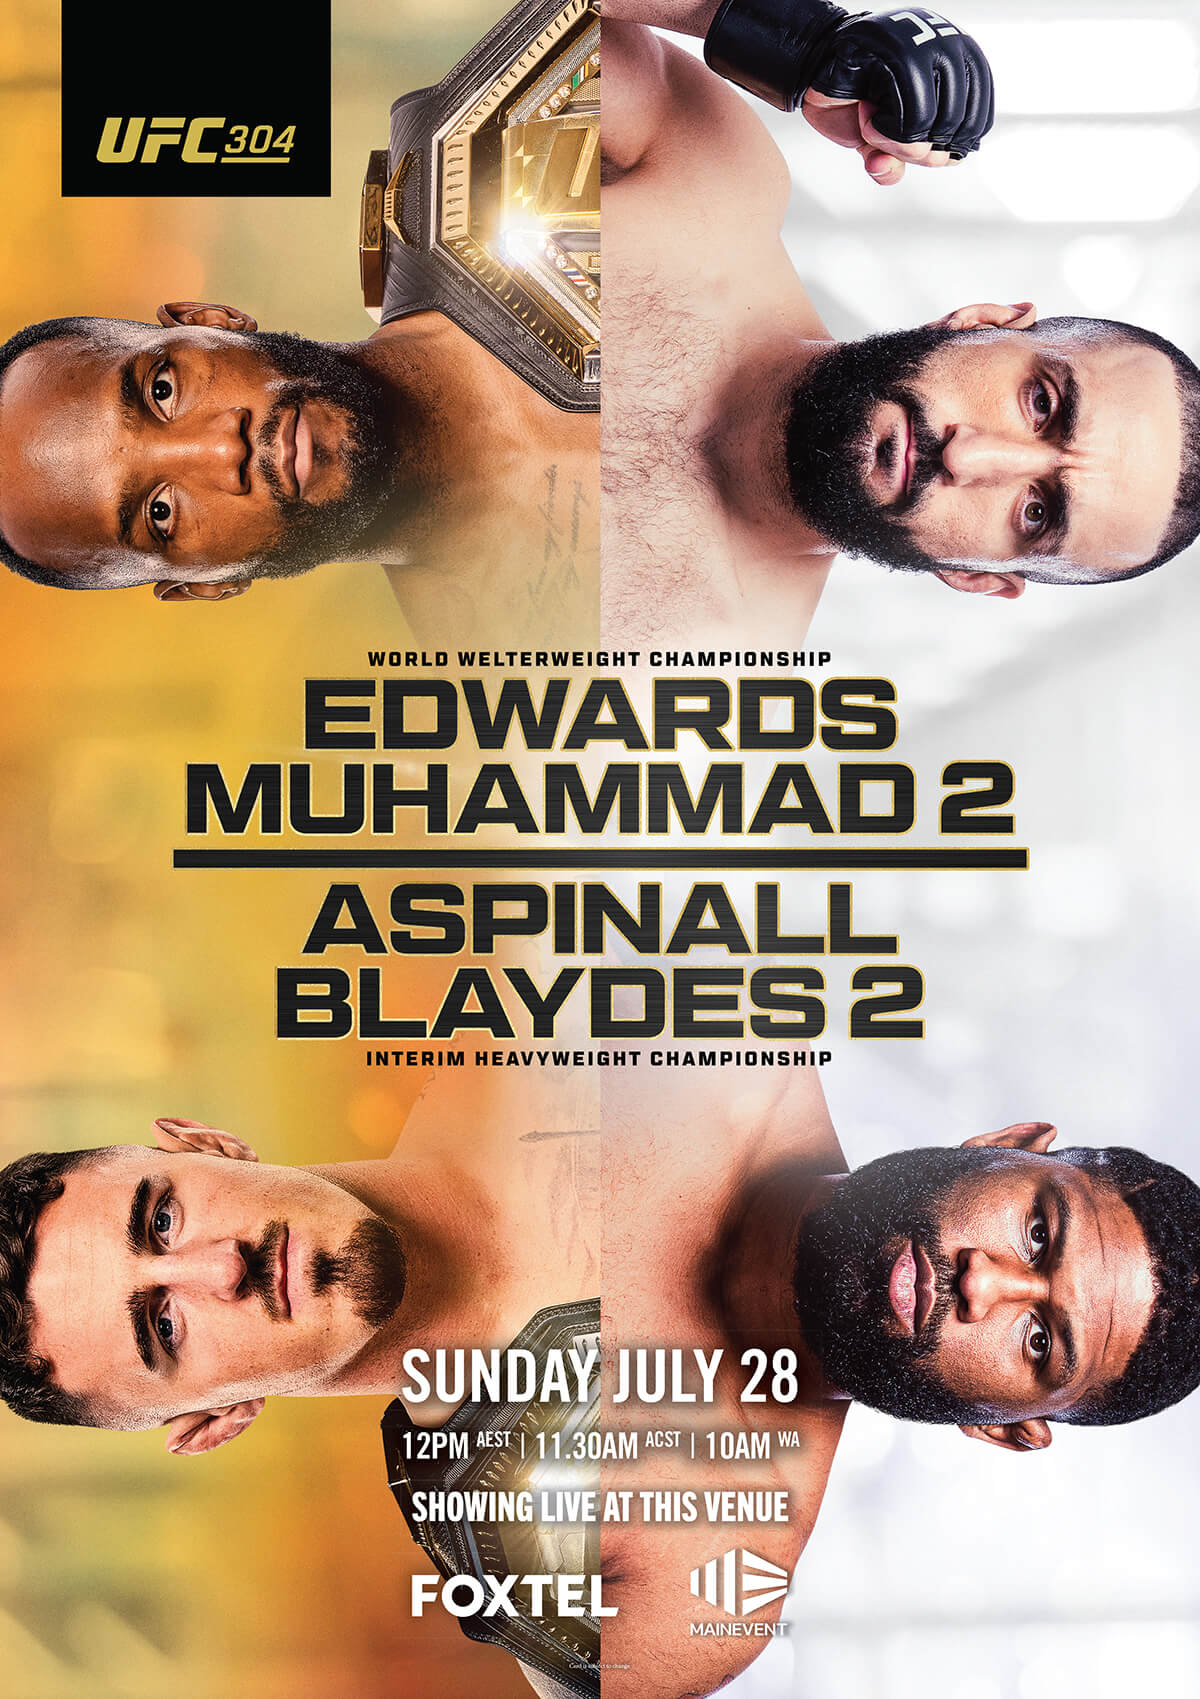 UFC_304_Venue_A1_Poster (1)